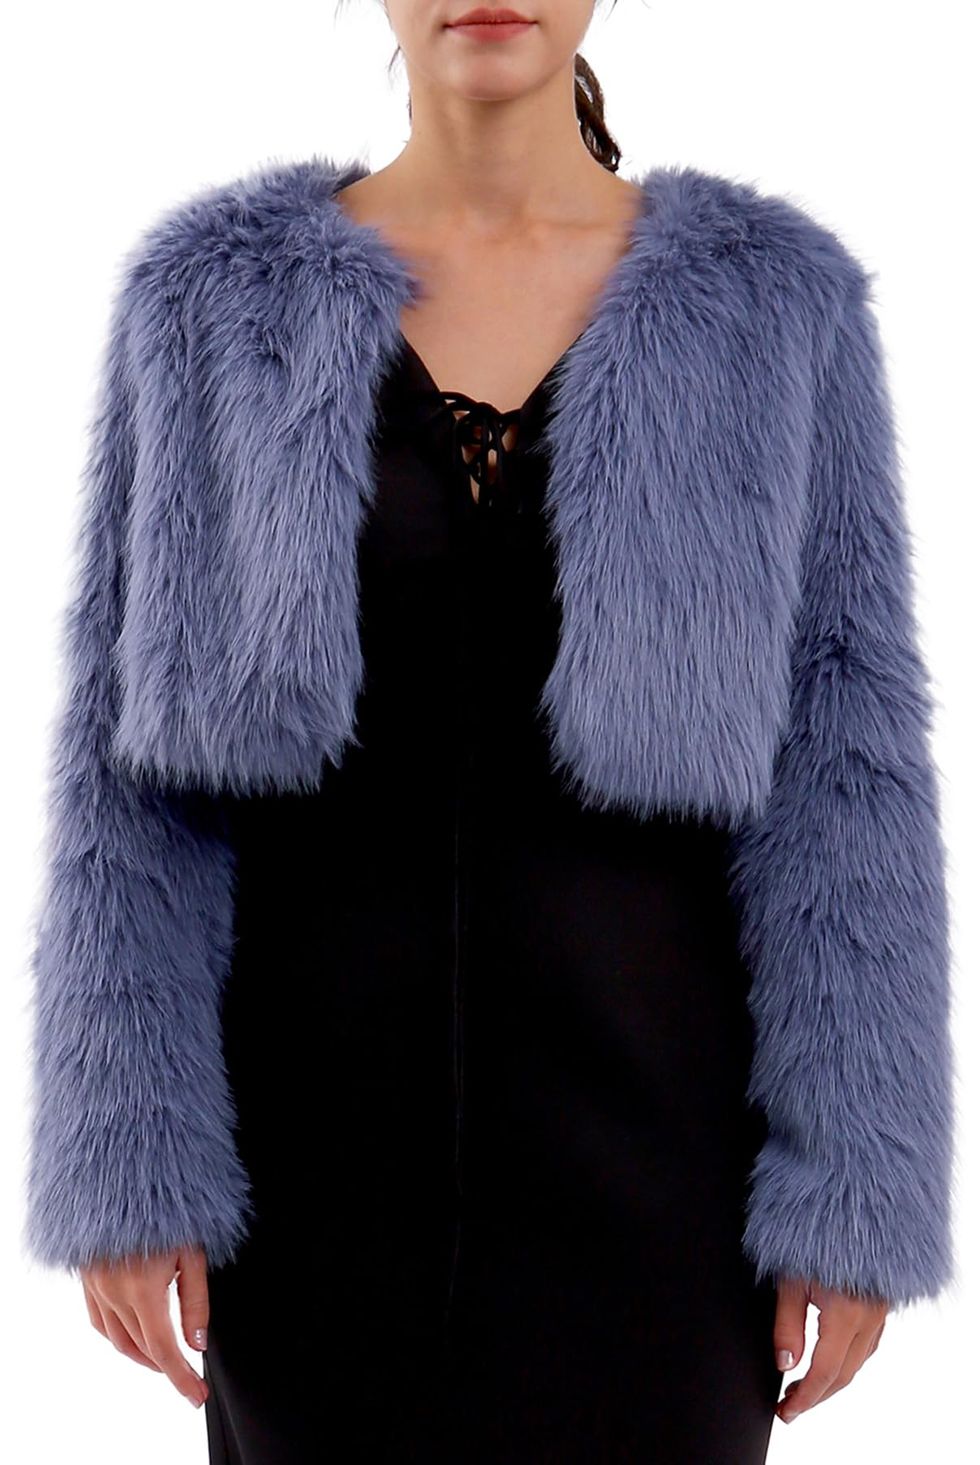 Womens Faux Fur Cropped Coat Open Front Long Sleeve Winter Jacket